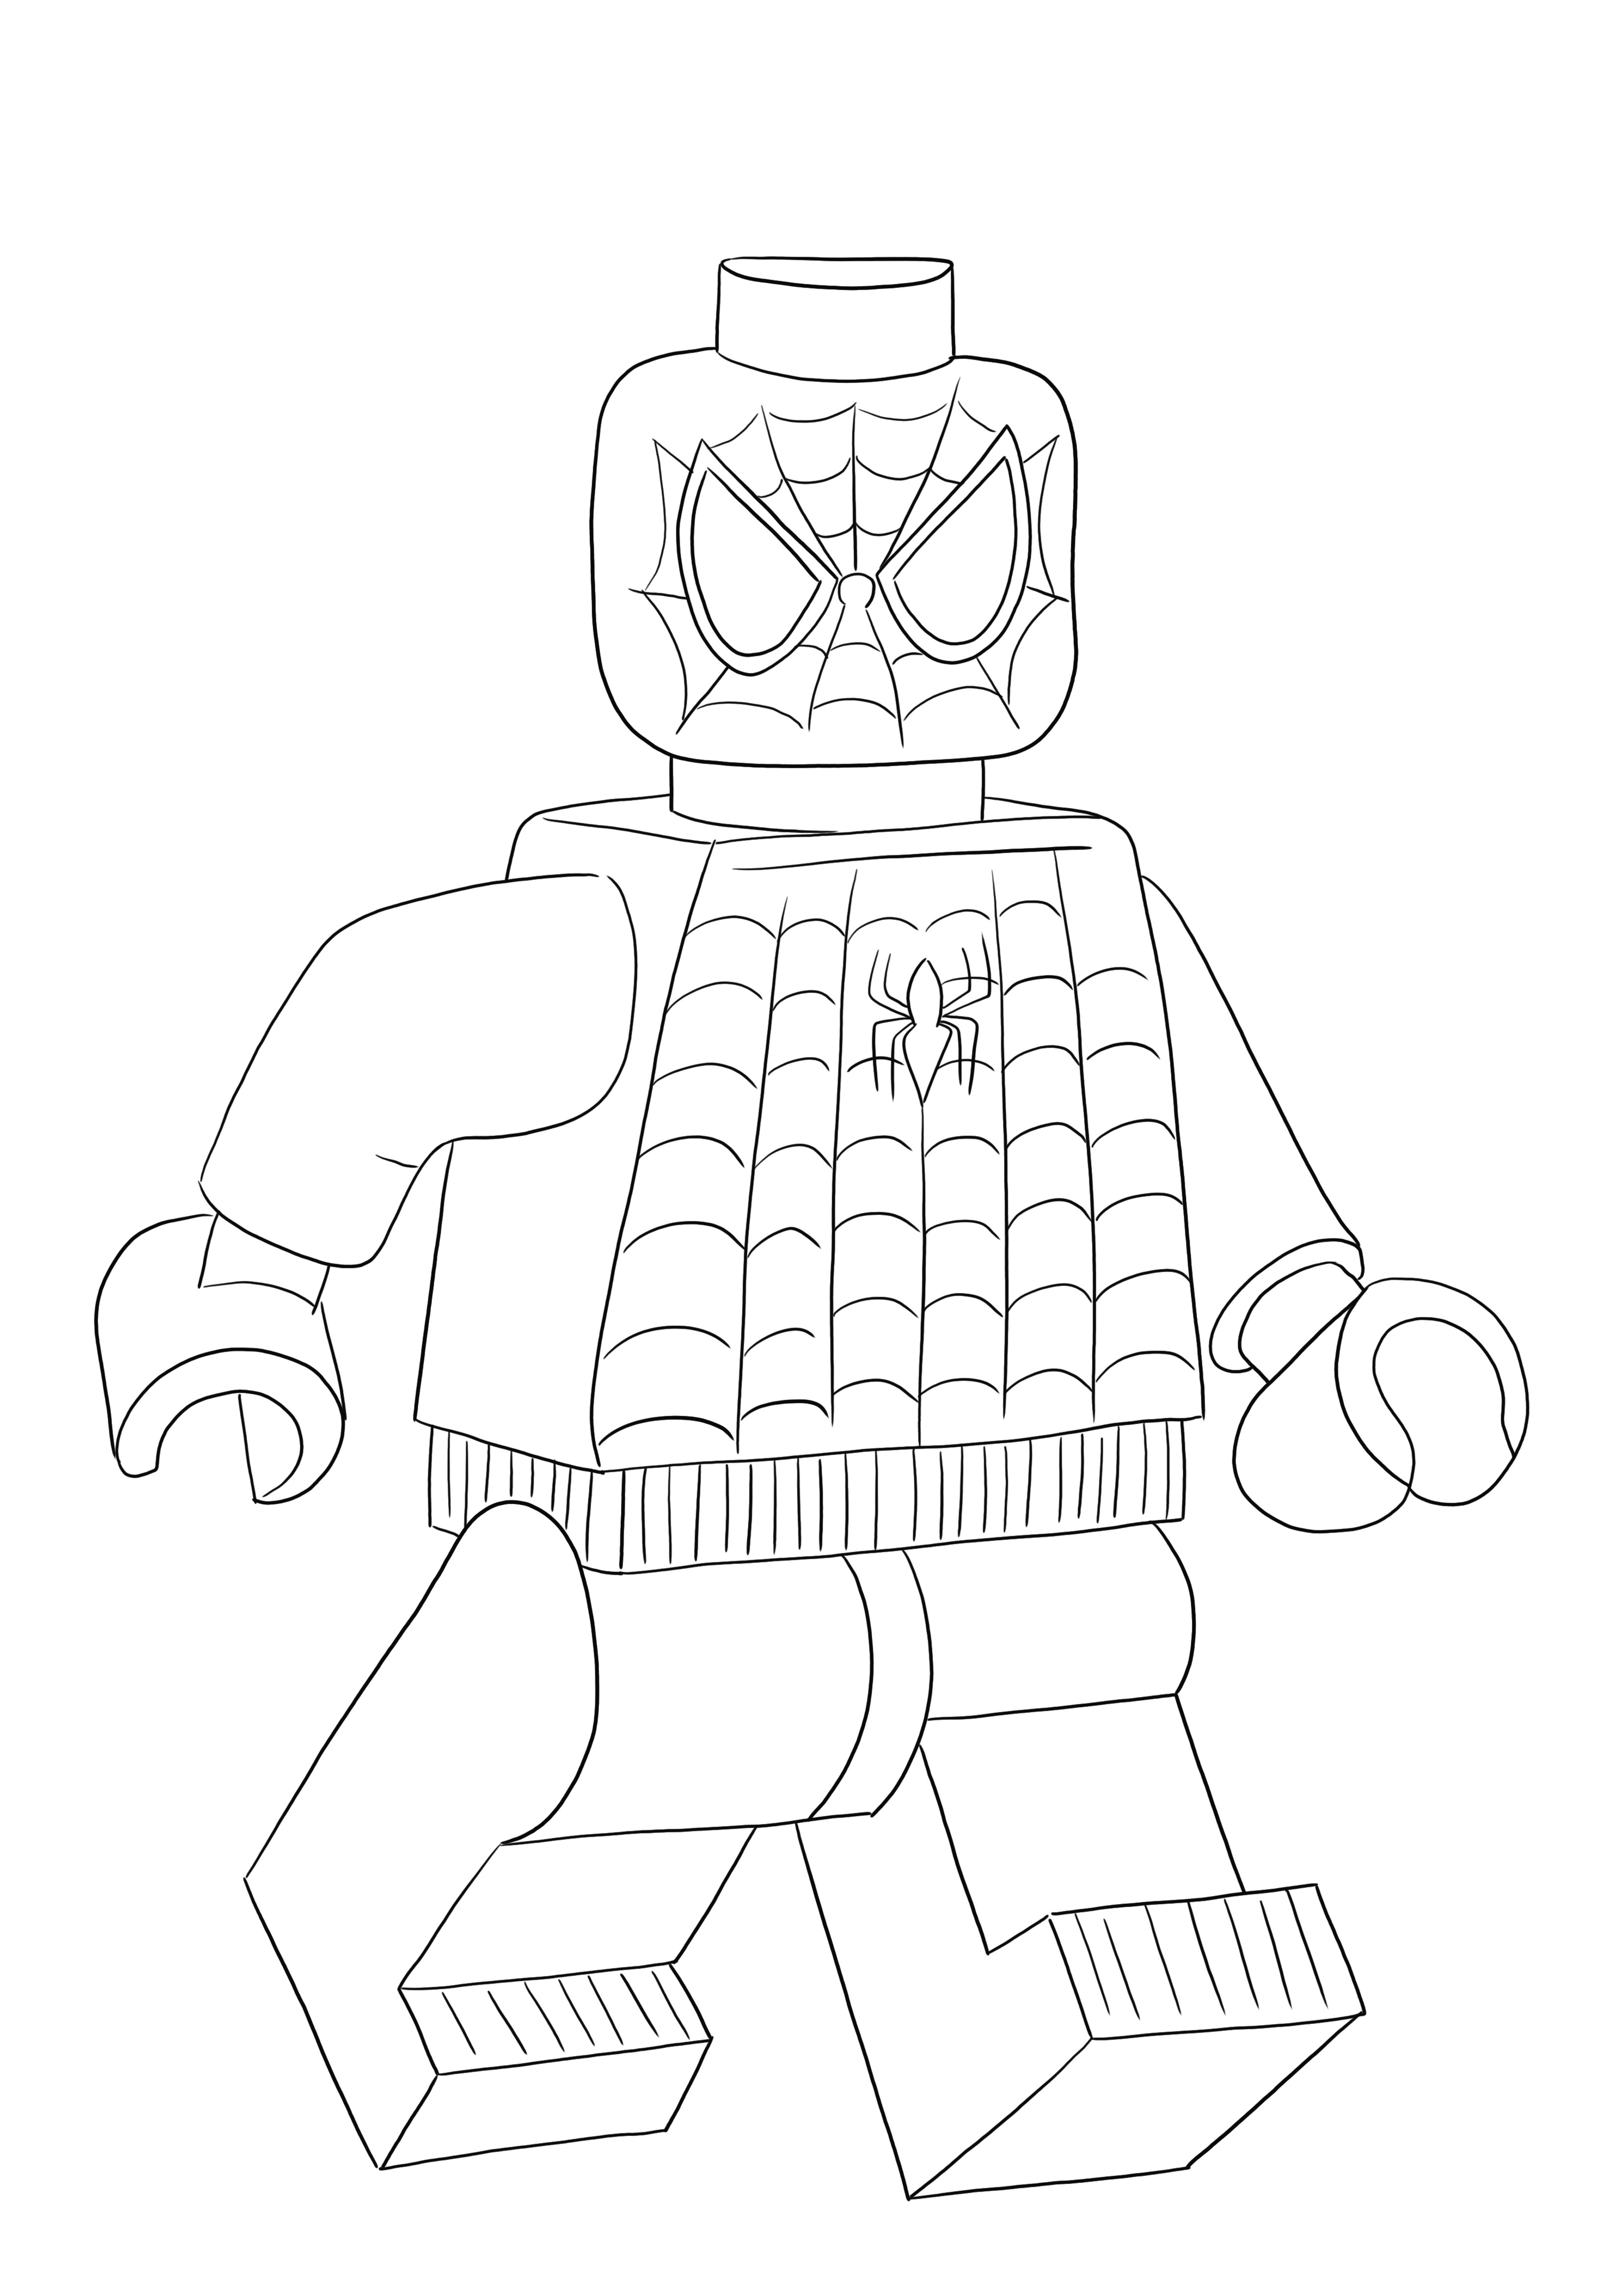 L'omaggio di Lego Spiderman è pronto per essere colorato e divertire tutti gli amanti dei Lego